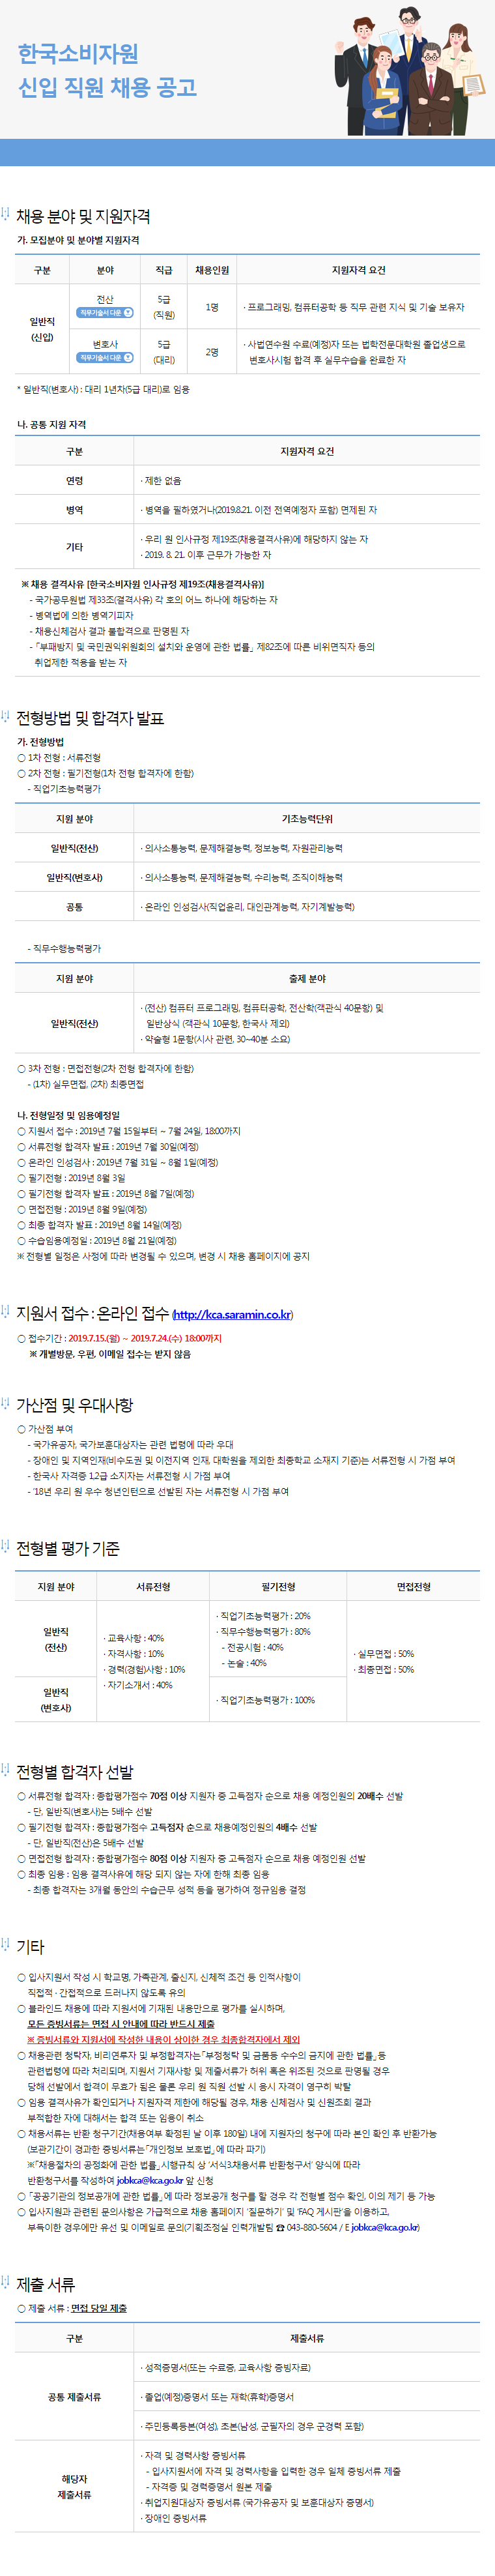 (붙임1)한국소비자원_채용공고문.png